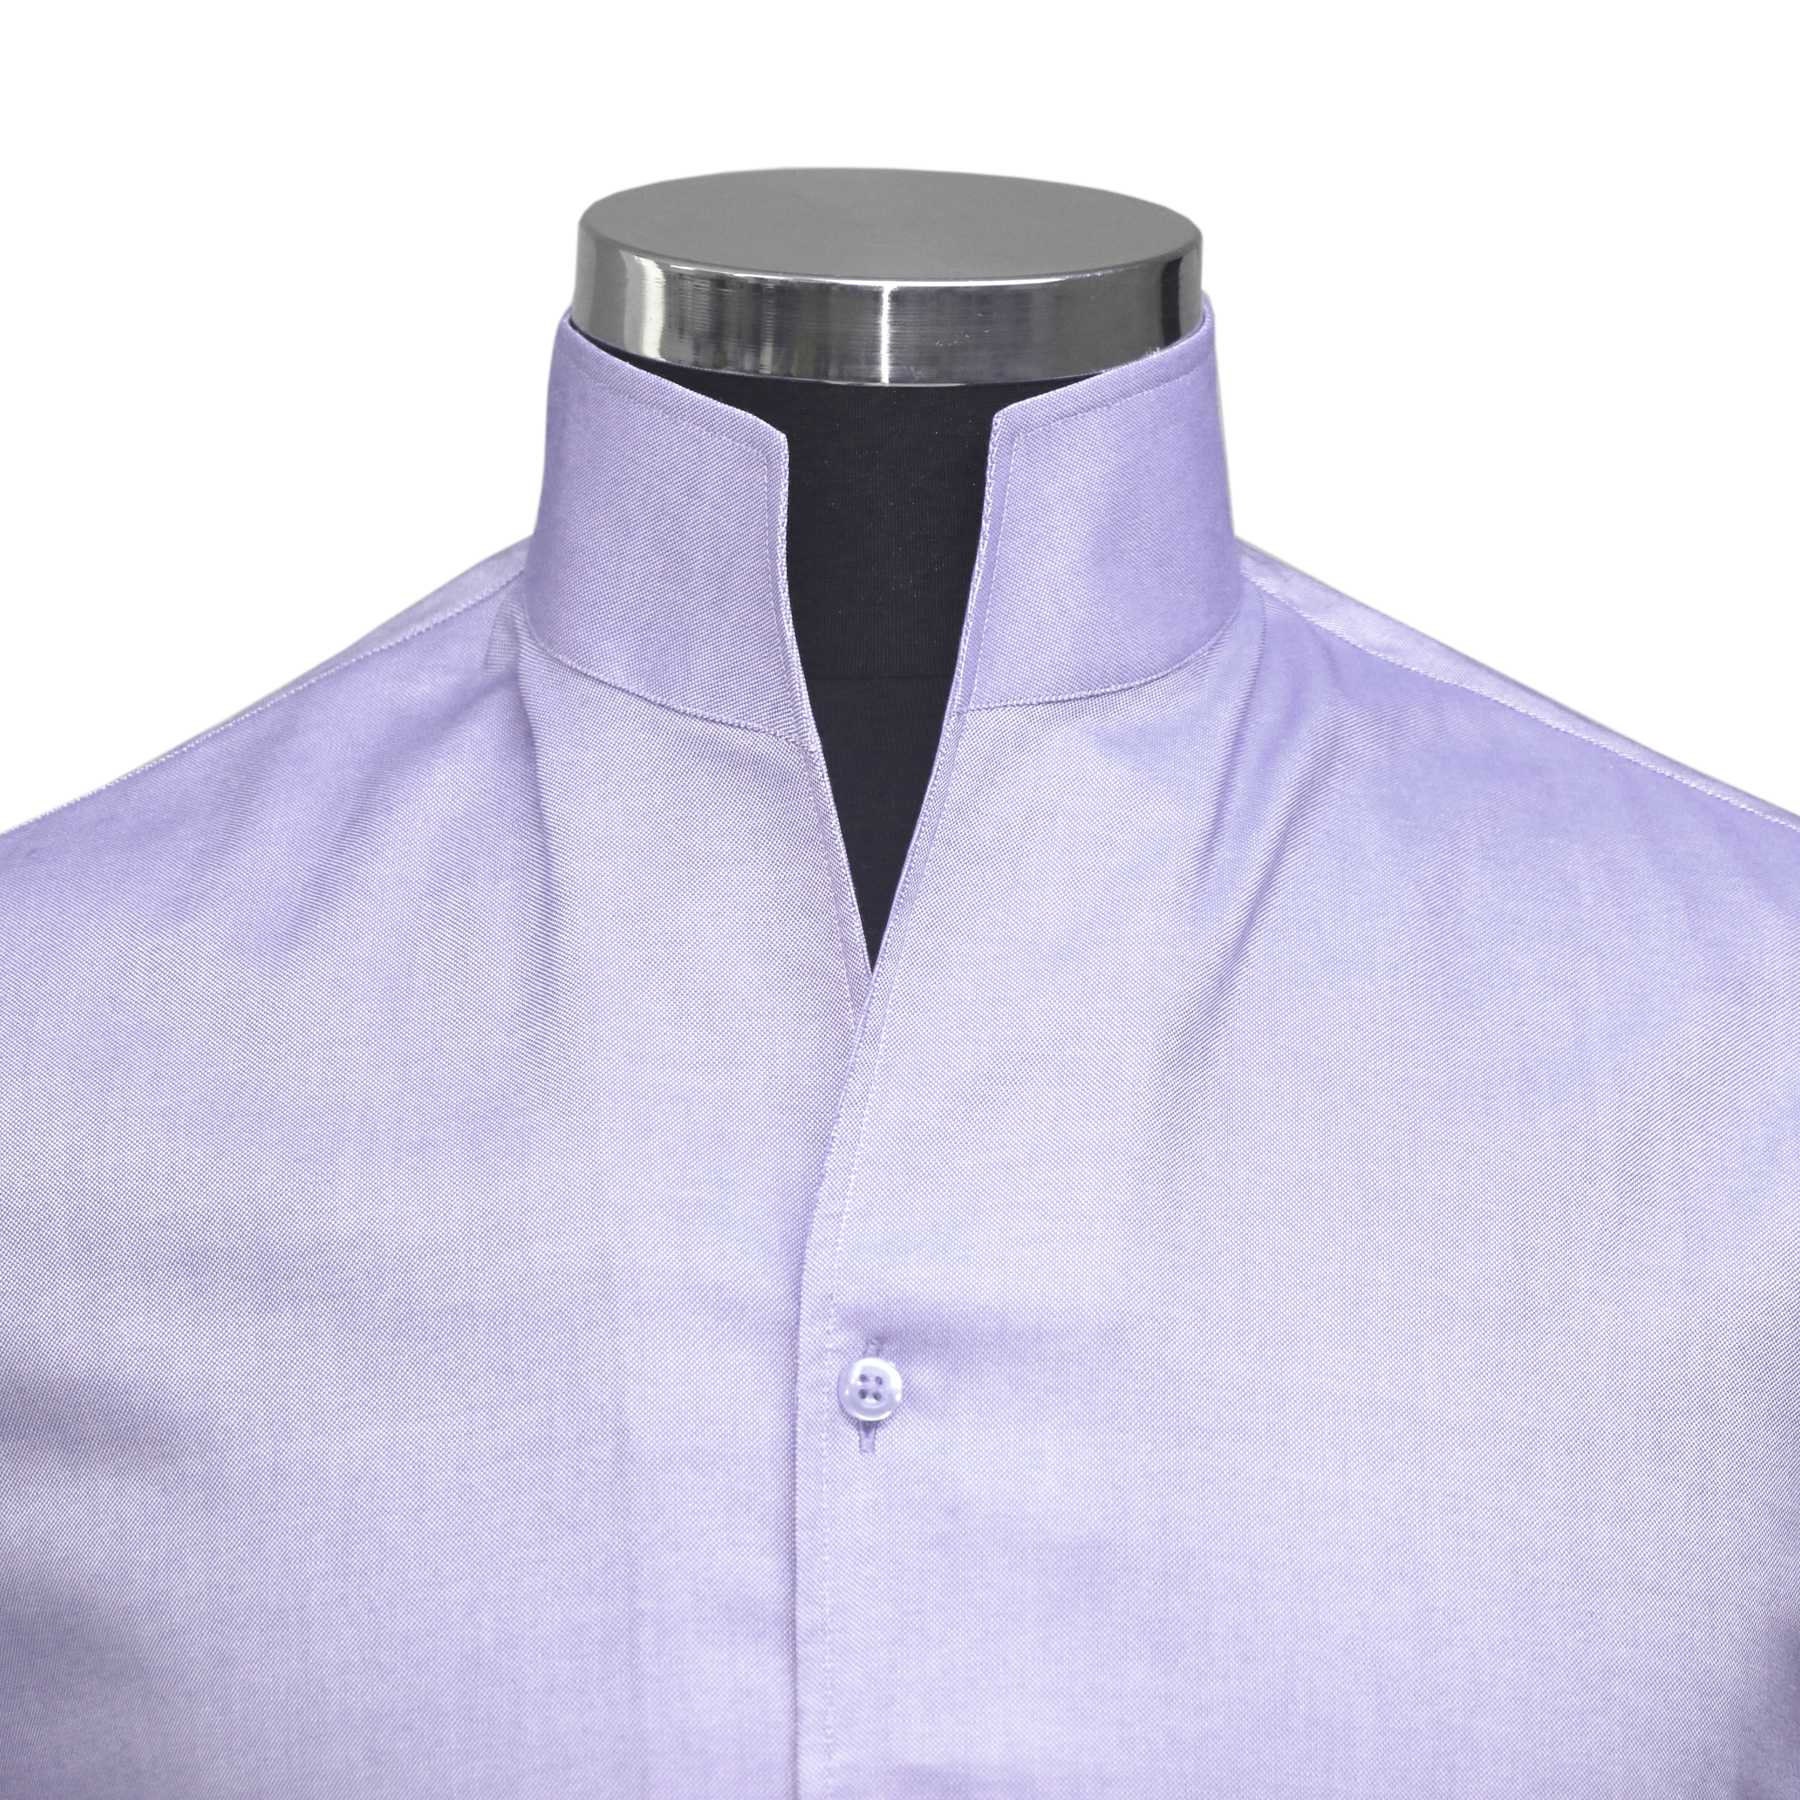 Men's high Open collar shirt 100% cotton LILAC No button | Etsy